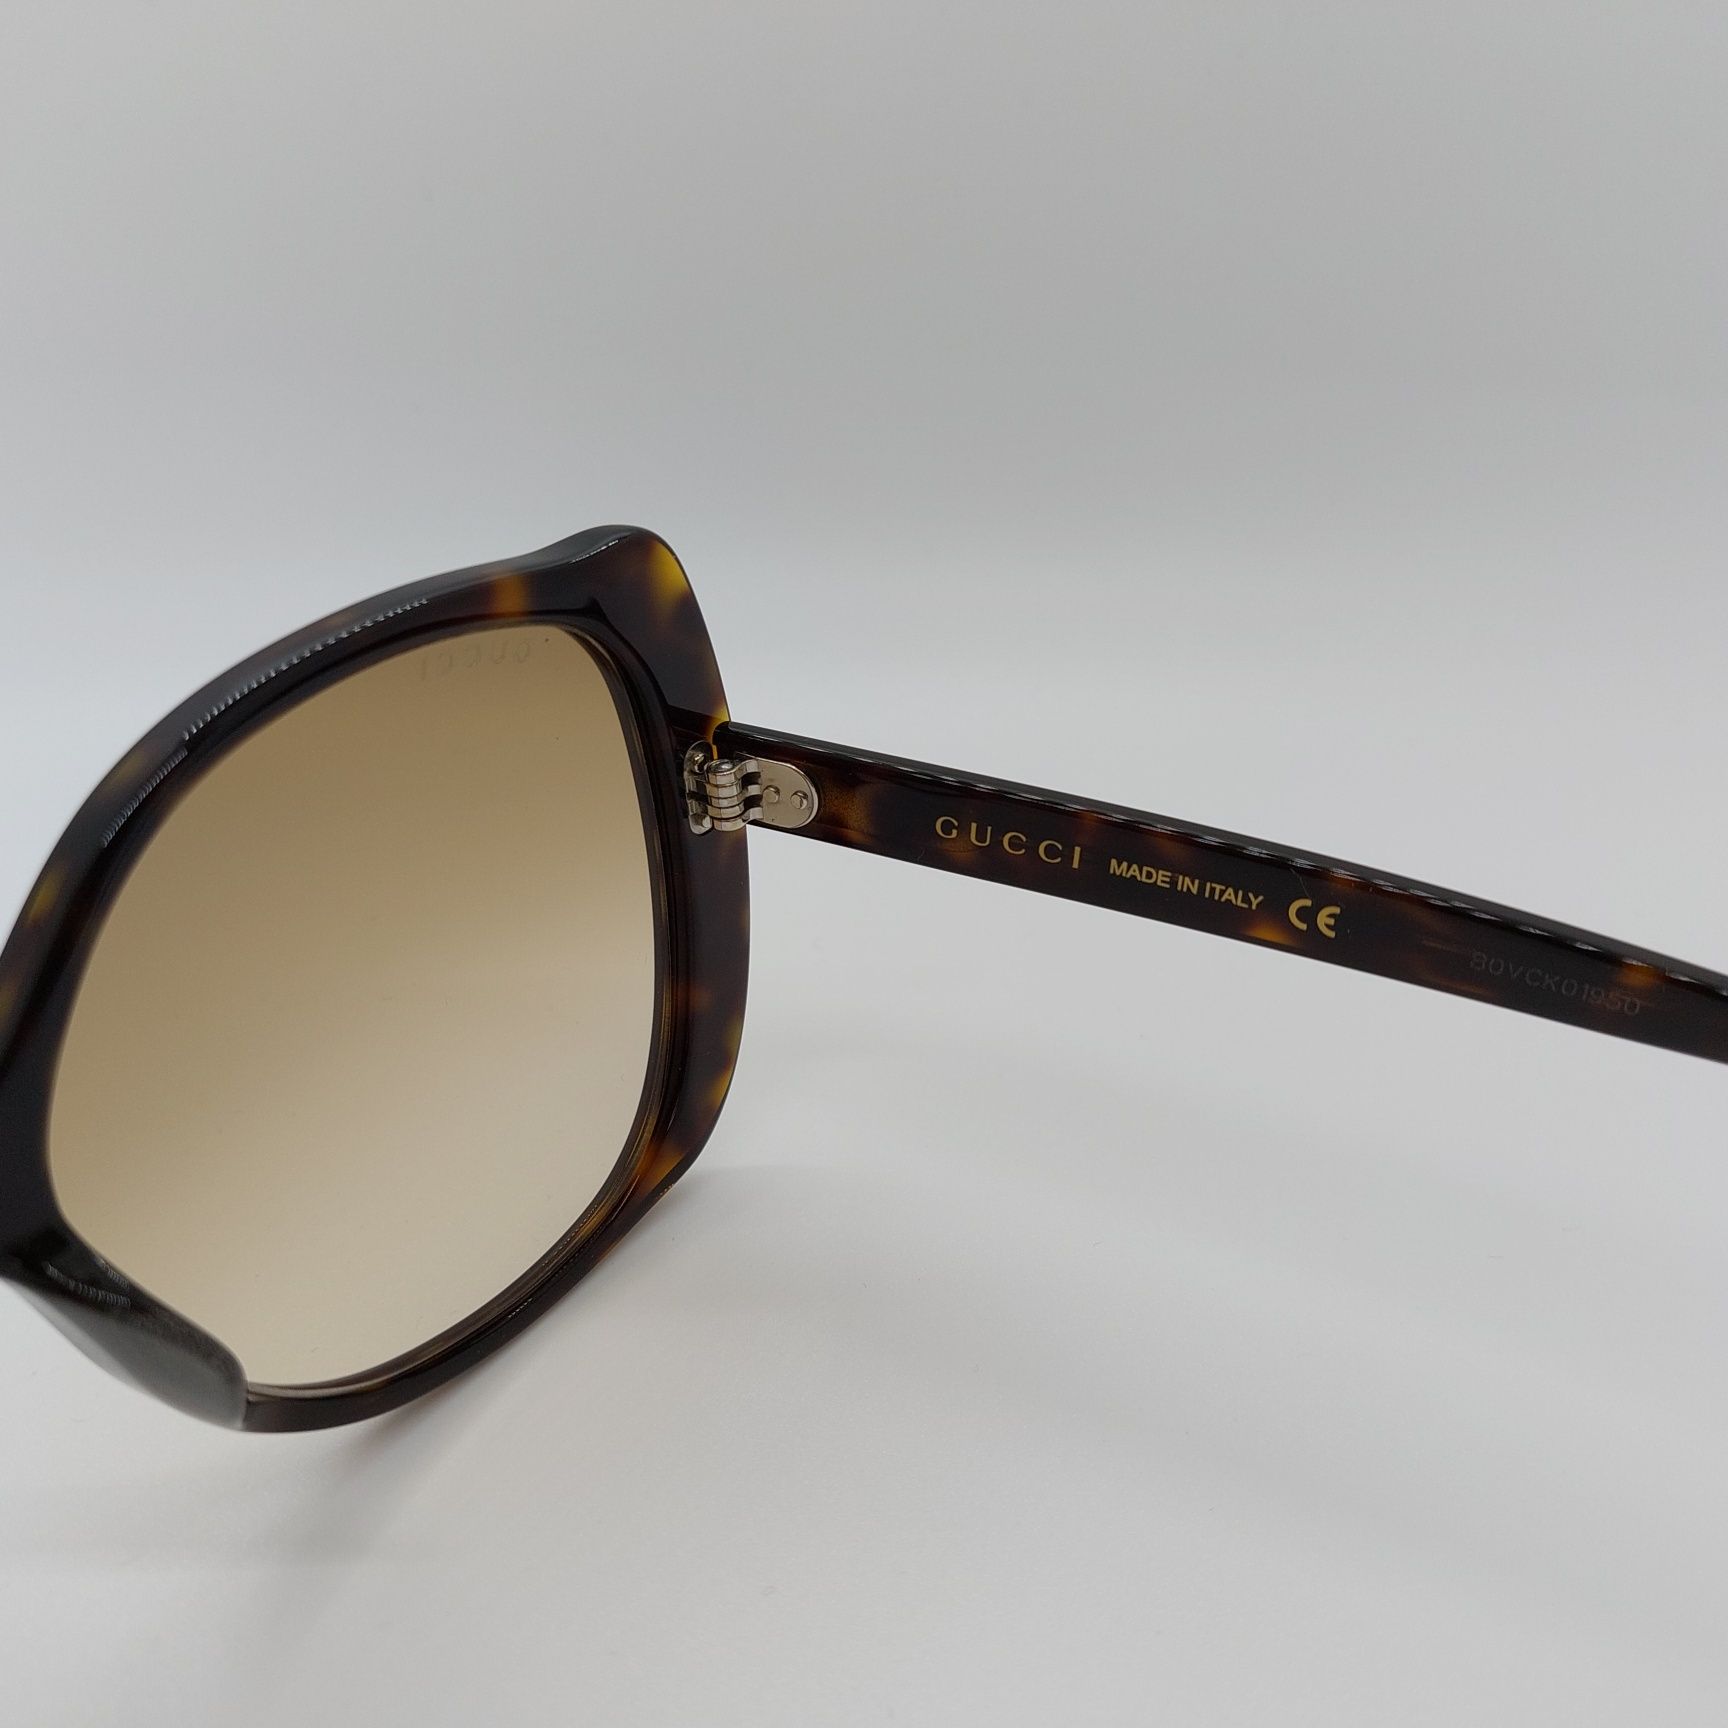 Óculos sol Gucci originais
Preço original €280

- novos e nunca usados